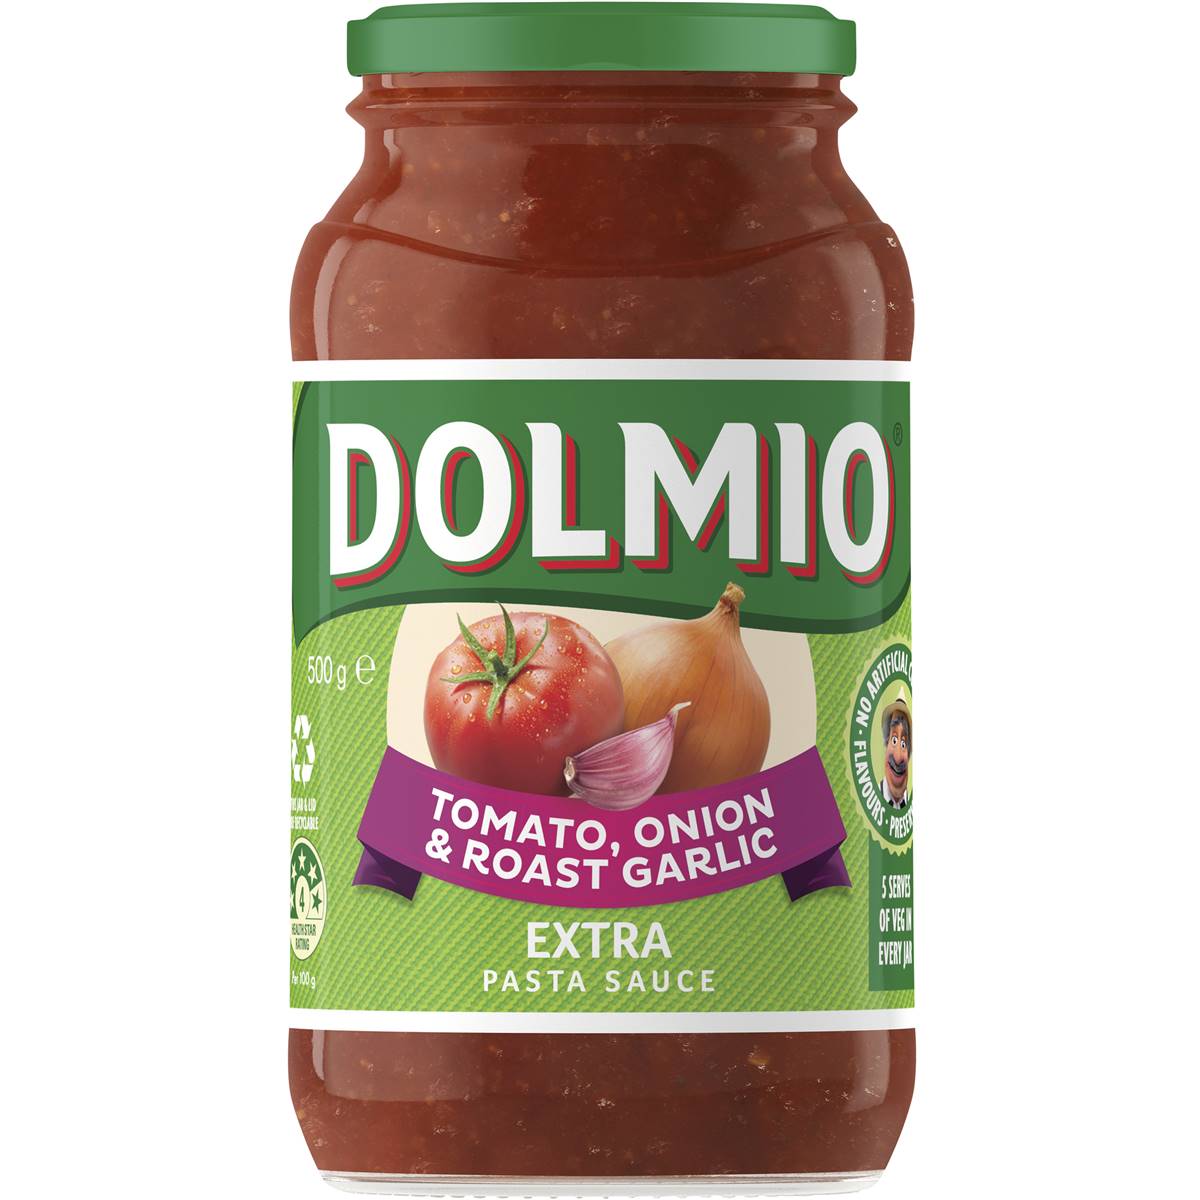 Dolmio Pasta Sauce Tomato, Onion & Roast Garlic 500g